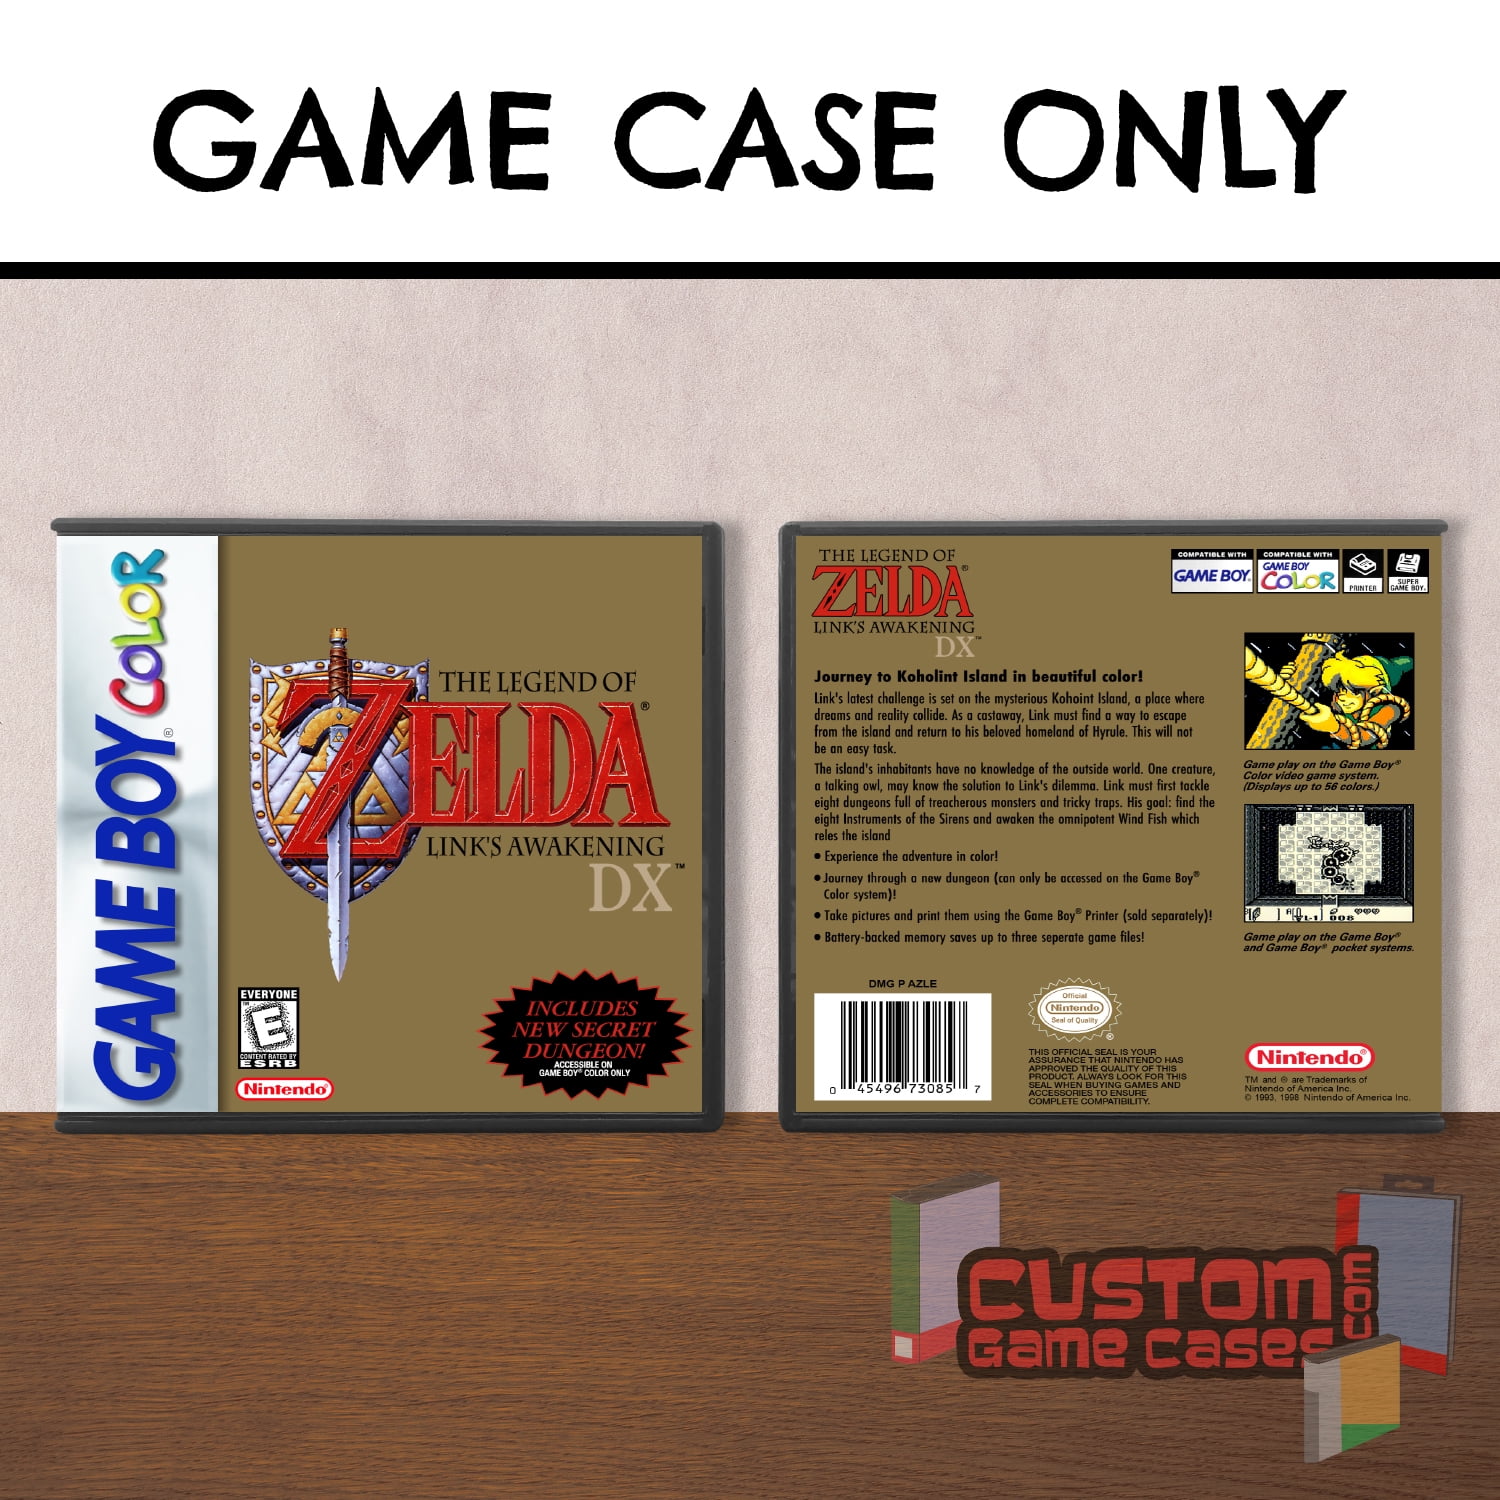 Legend of Zelda: Link's Awakening DX (Game Boy Color, 1998) for sale online